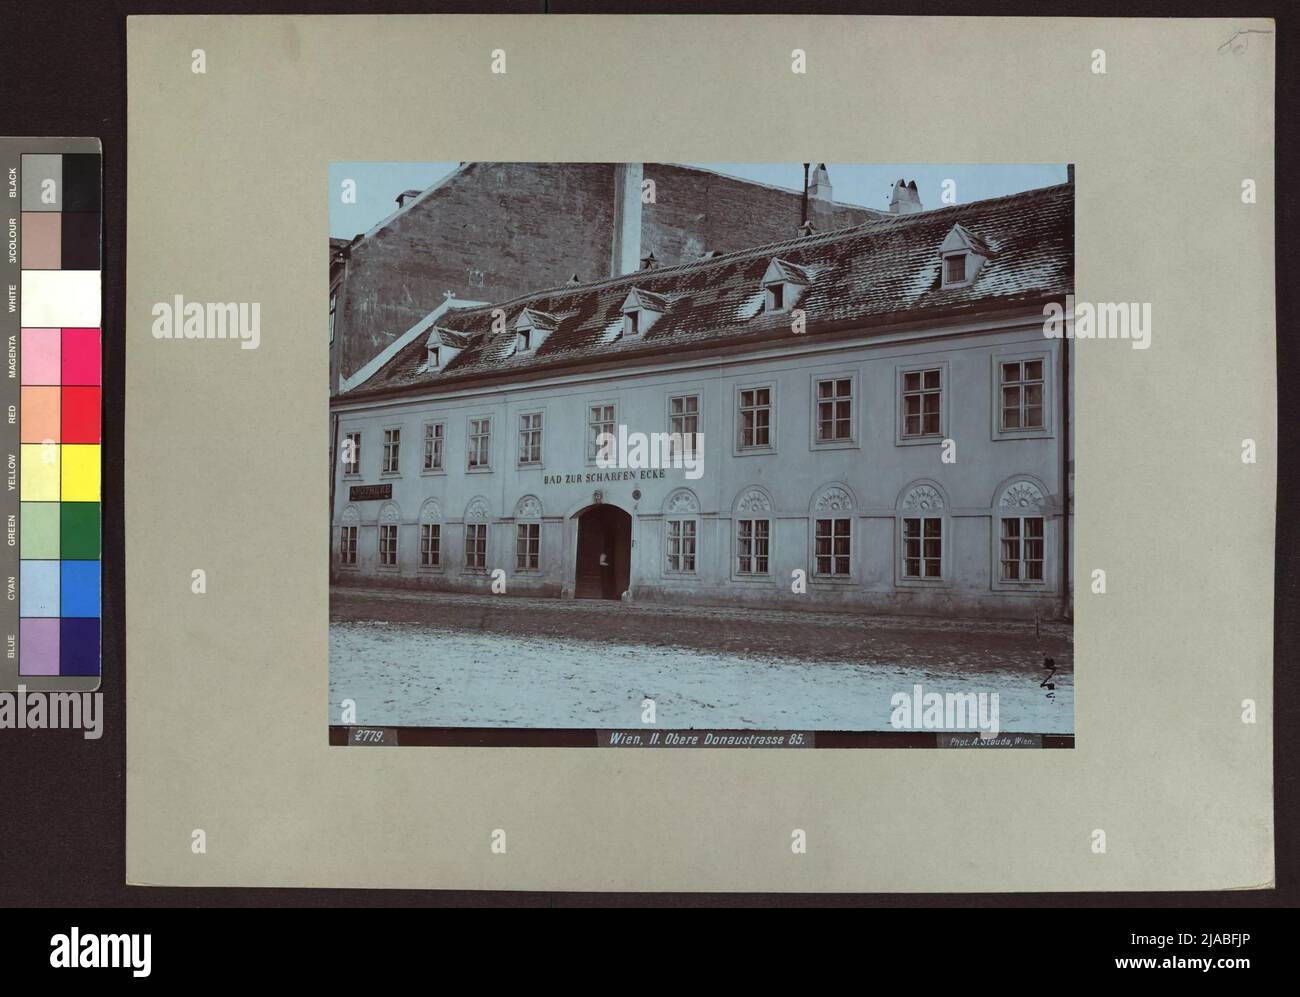 2nd, Obere Donaustraße 85 - Bad to the sharp corner. August Stauda (1861-1928), photographer Stock Photo